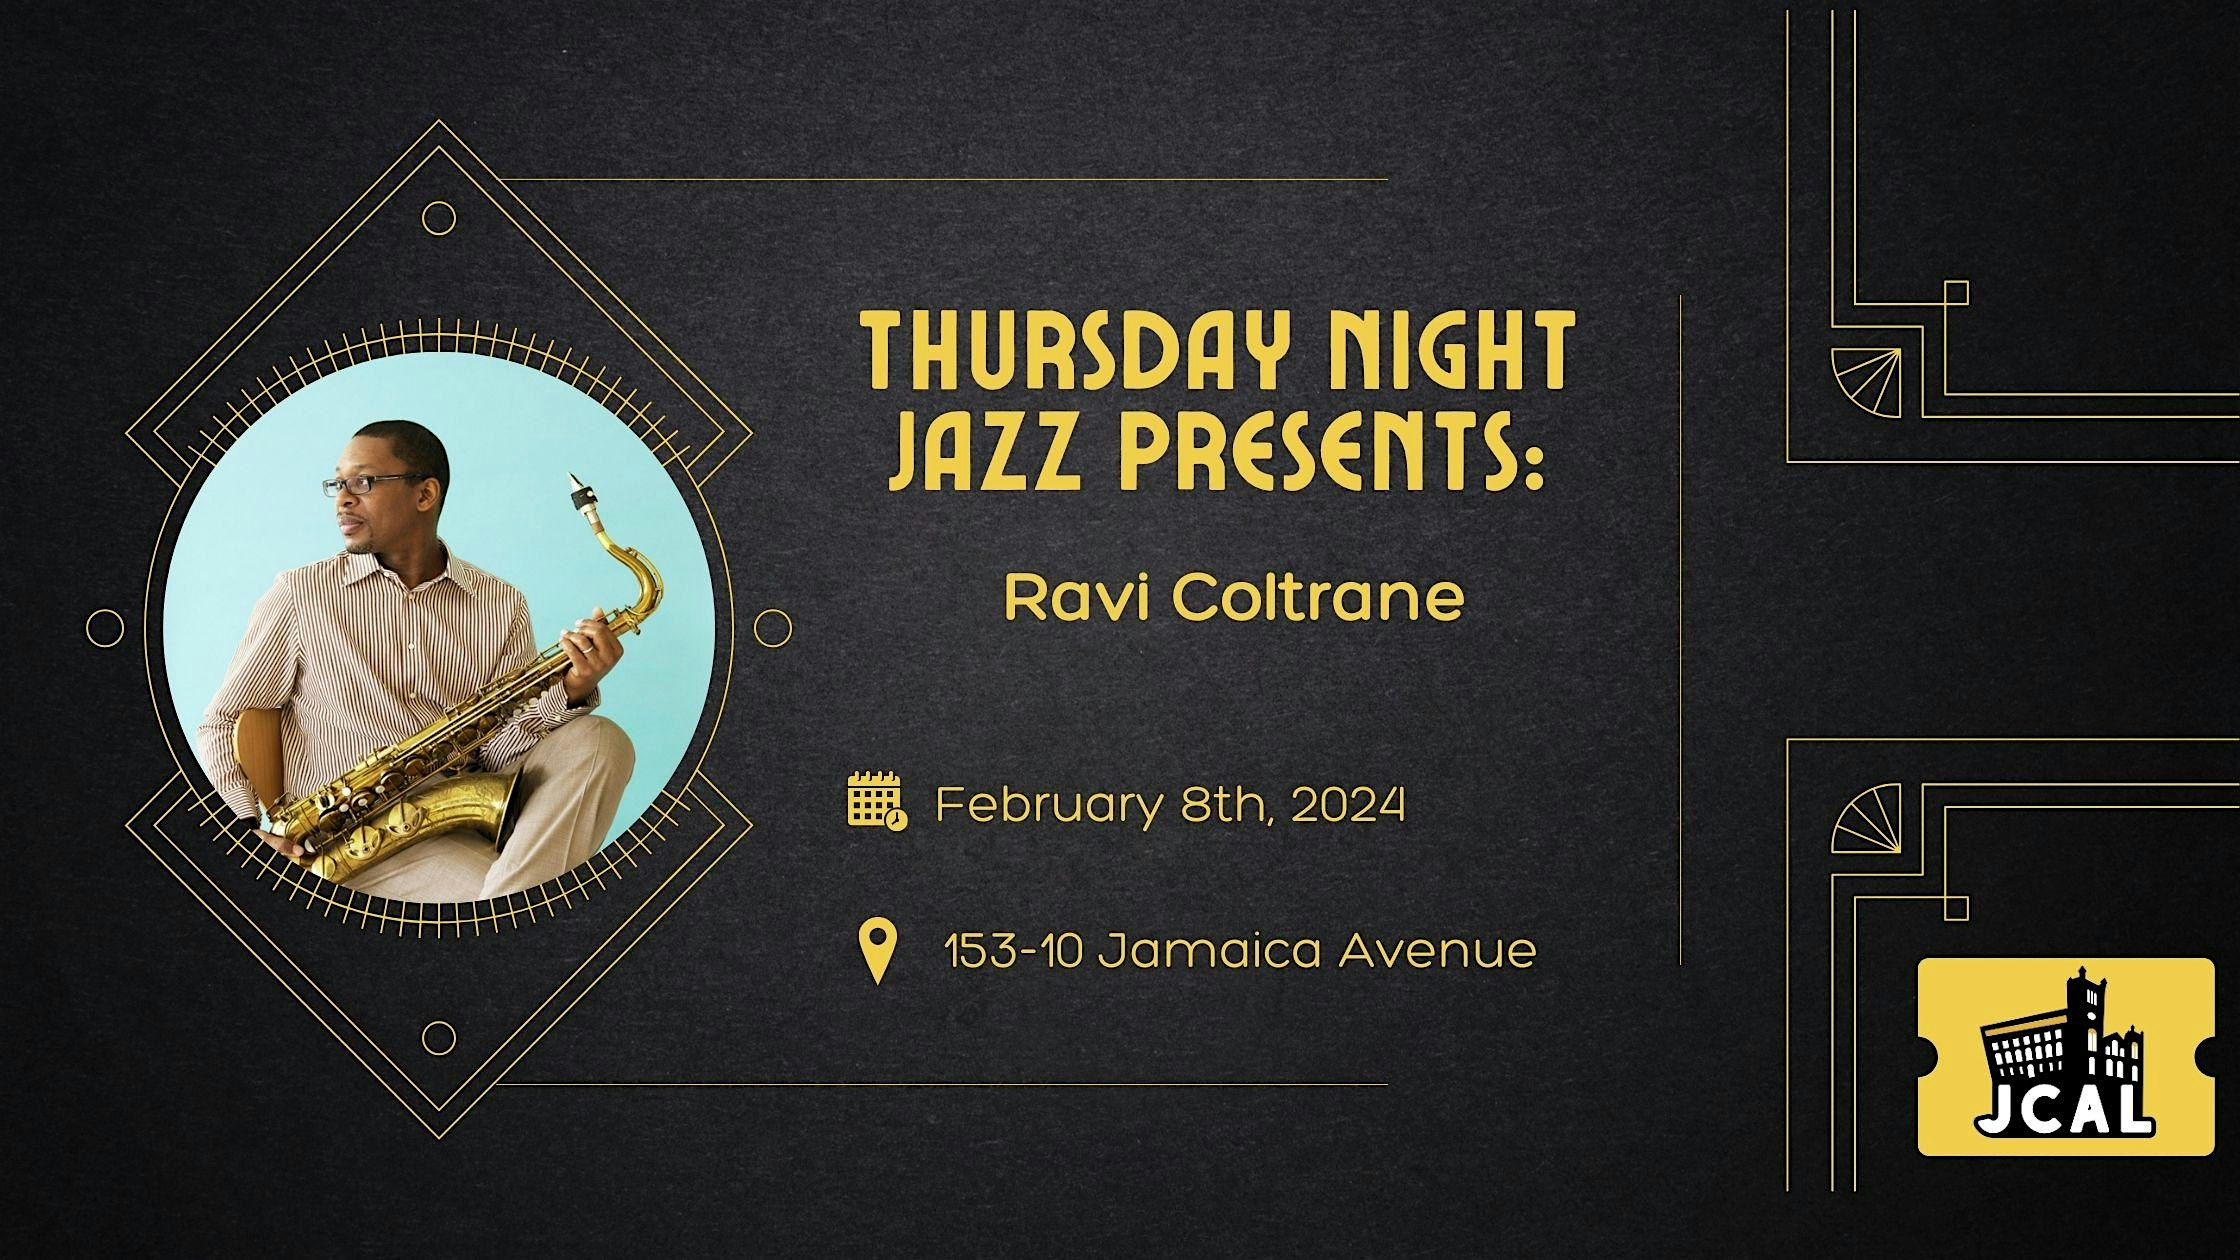 Thursday Night Jazz Presents: Ravi Coltrane